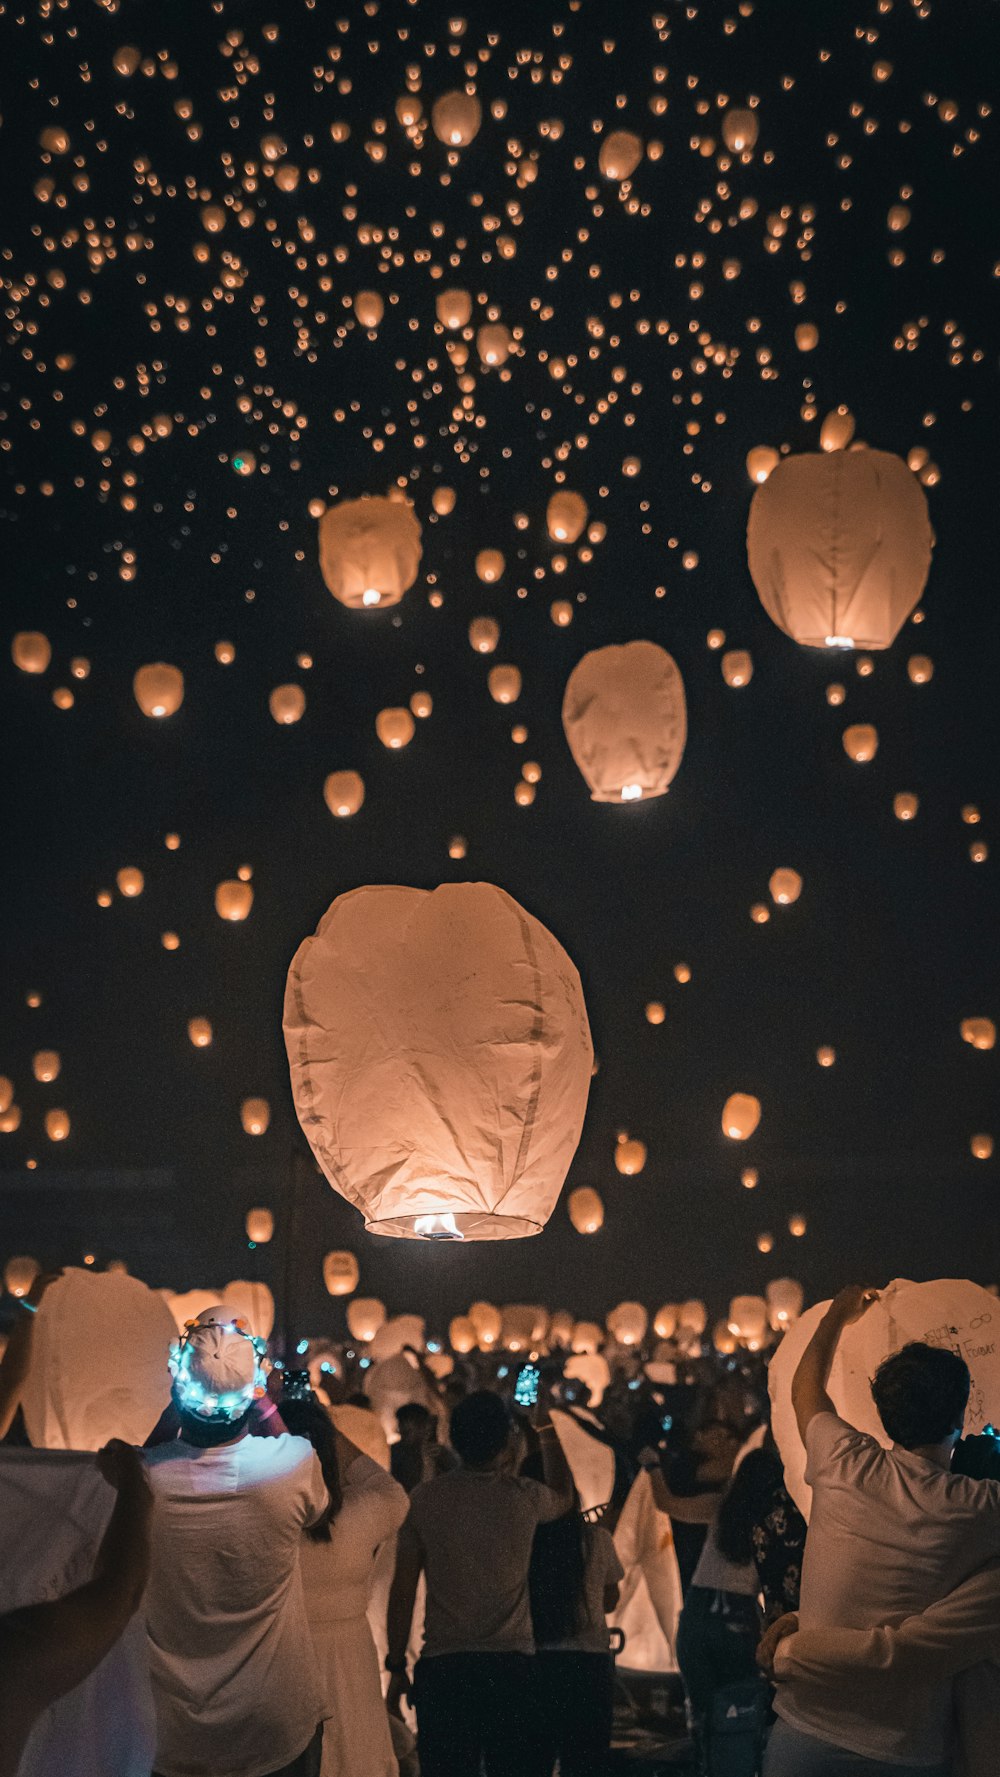 Un gruppo di persone che volano lanterne di carta nel cielo foto – Uomo  Immagine gratuita su Unsplash